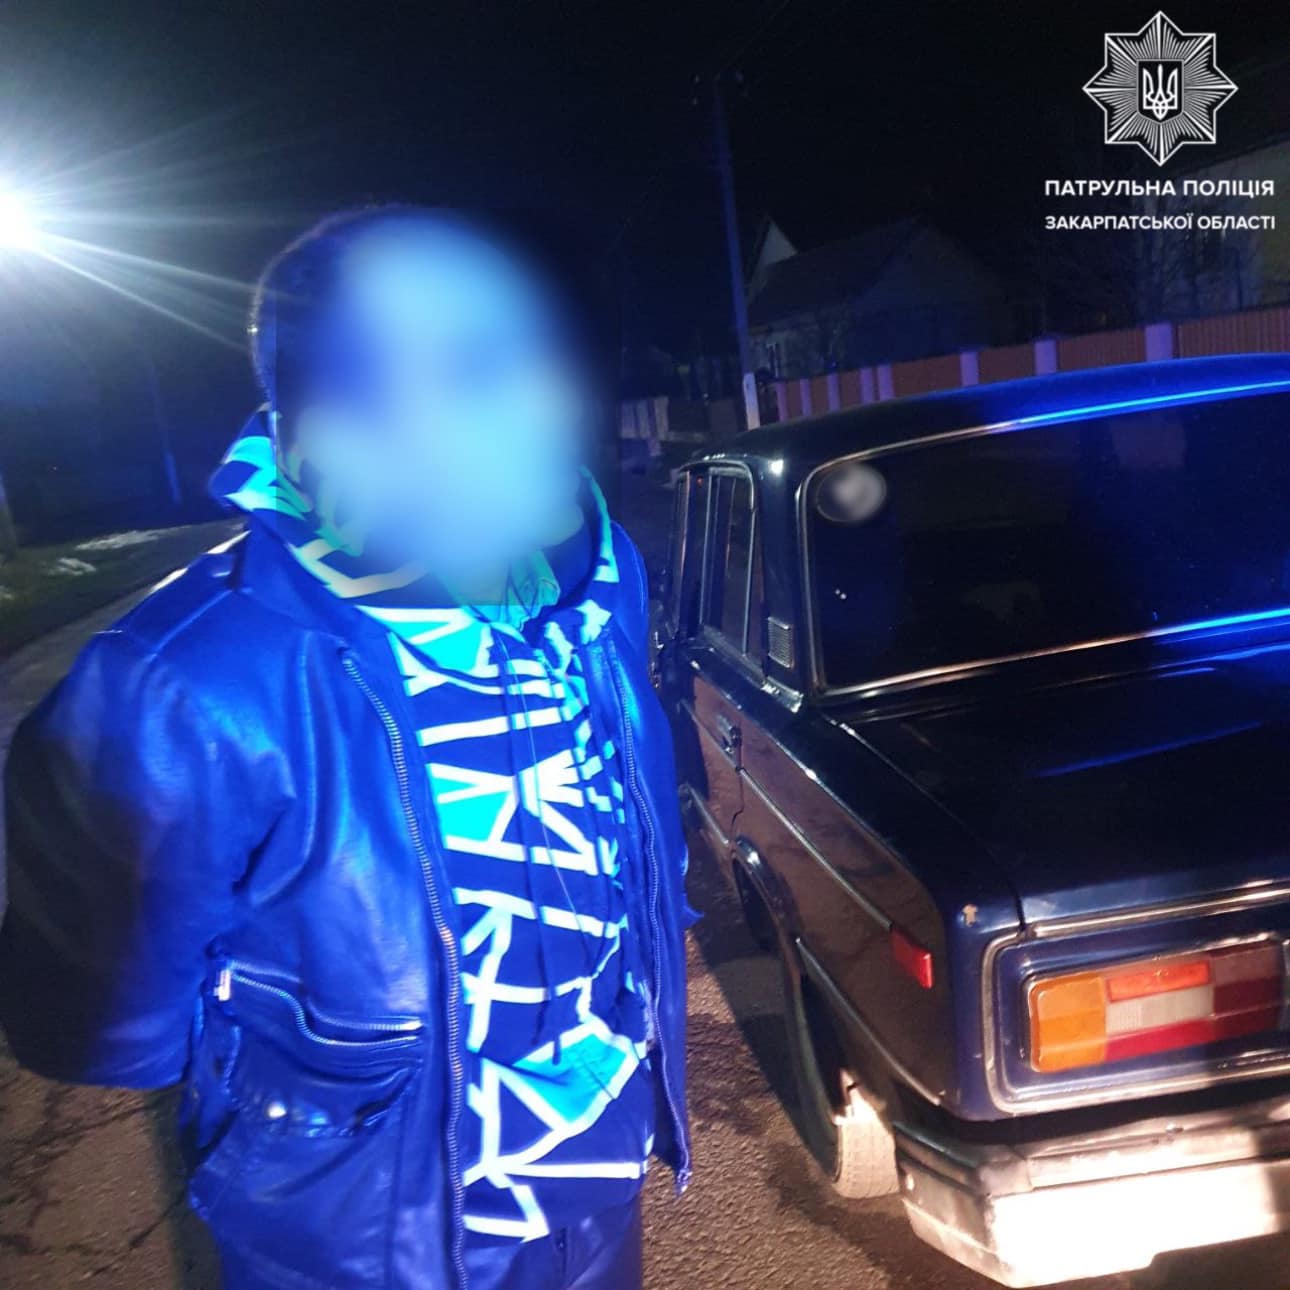 Неподалік Ужгорода зупинили "наркоп'яного" водія, який повторно впродовж року керував автівкою без прав (ФОТО)